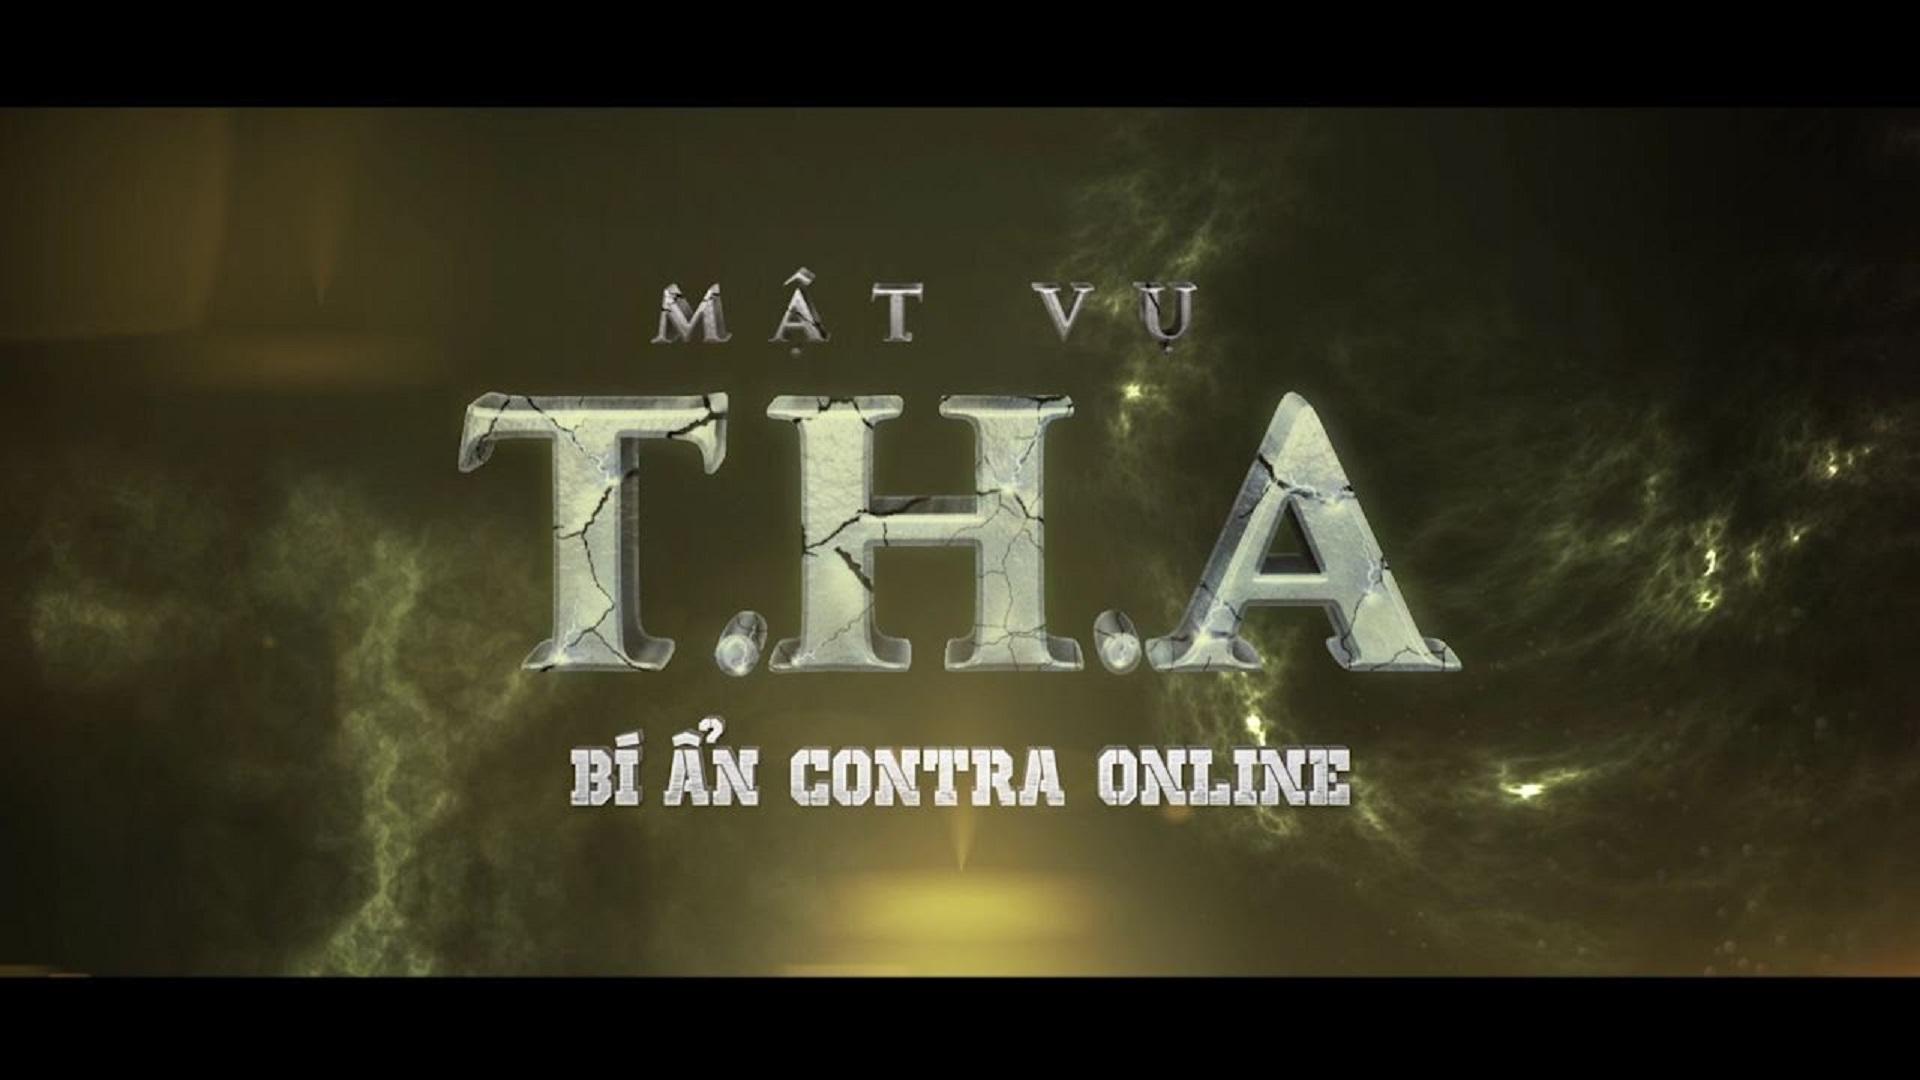 Contra Online - Mật vụ T.H.A tập 11: "Lucas và Aiden quay về từ cõi chết?"